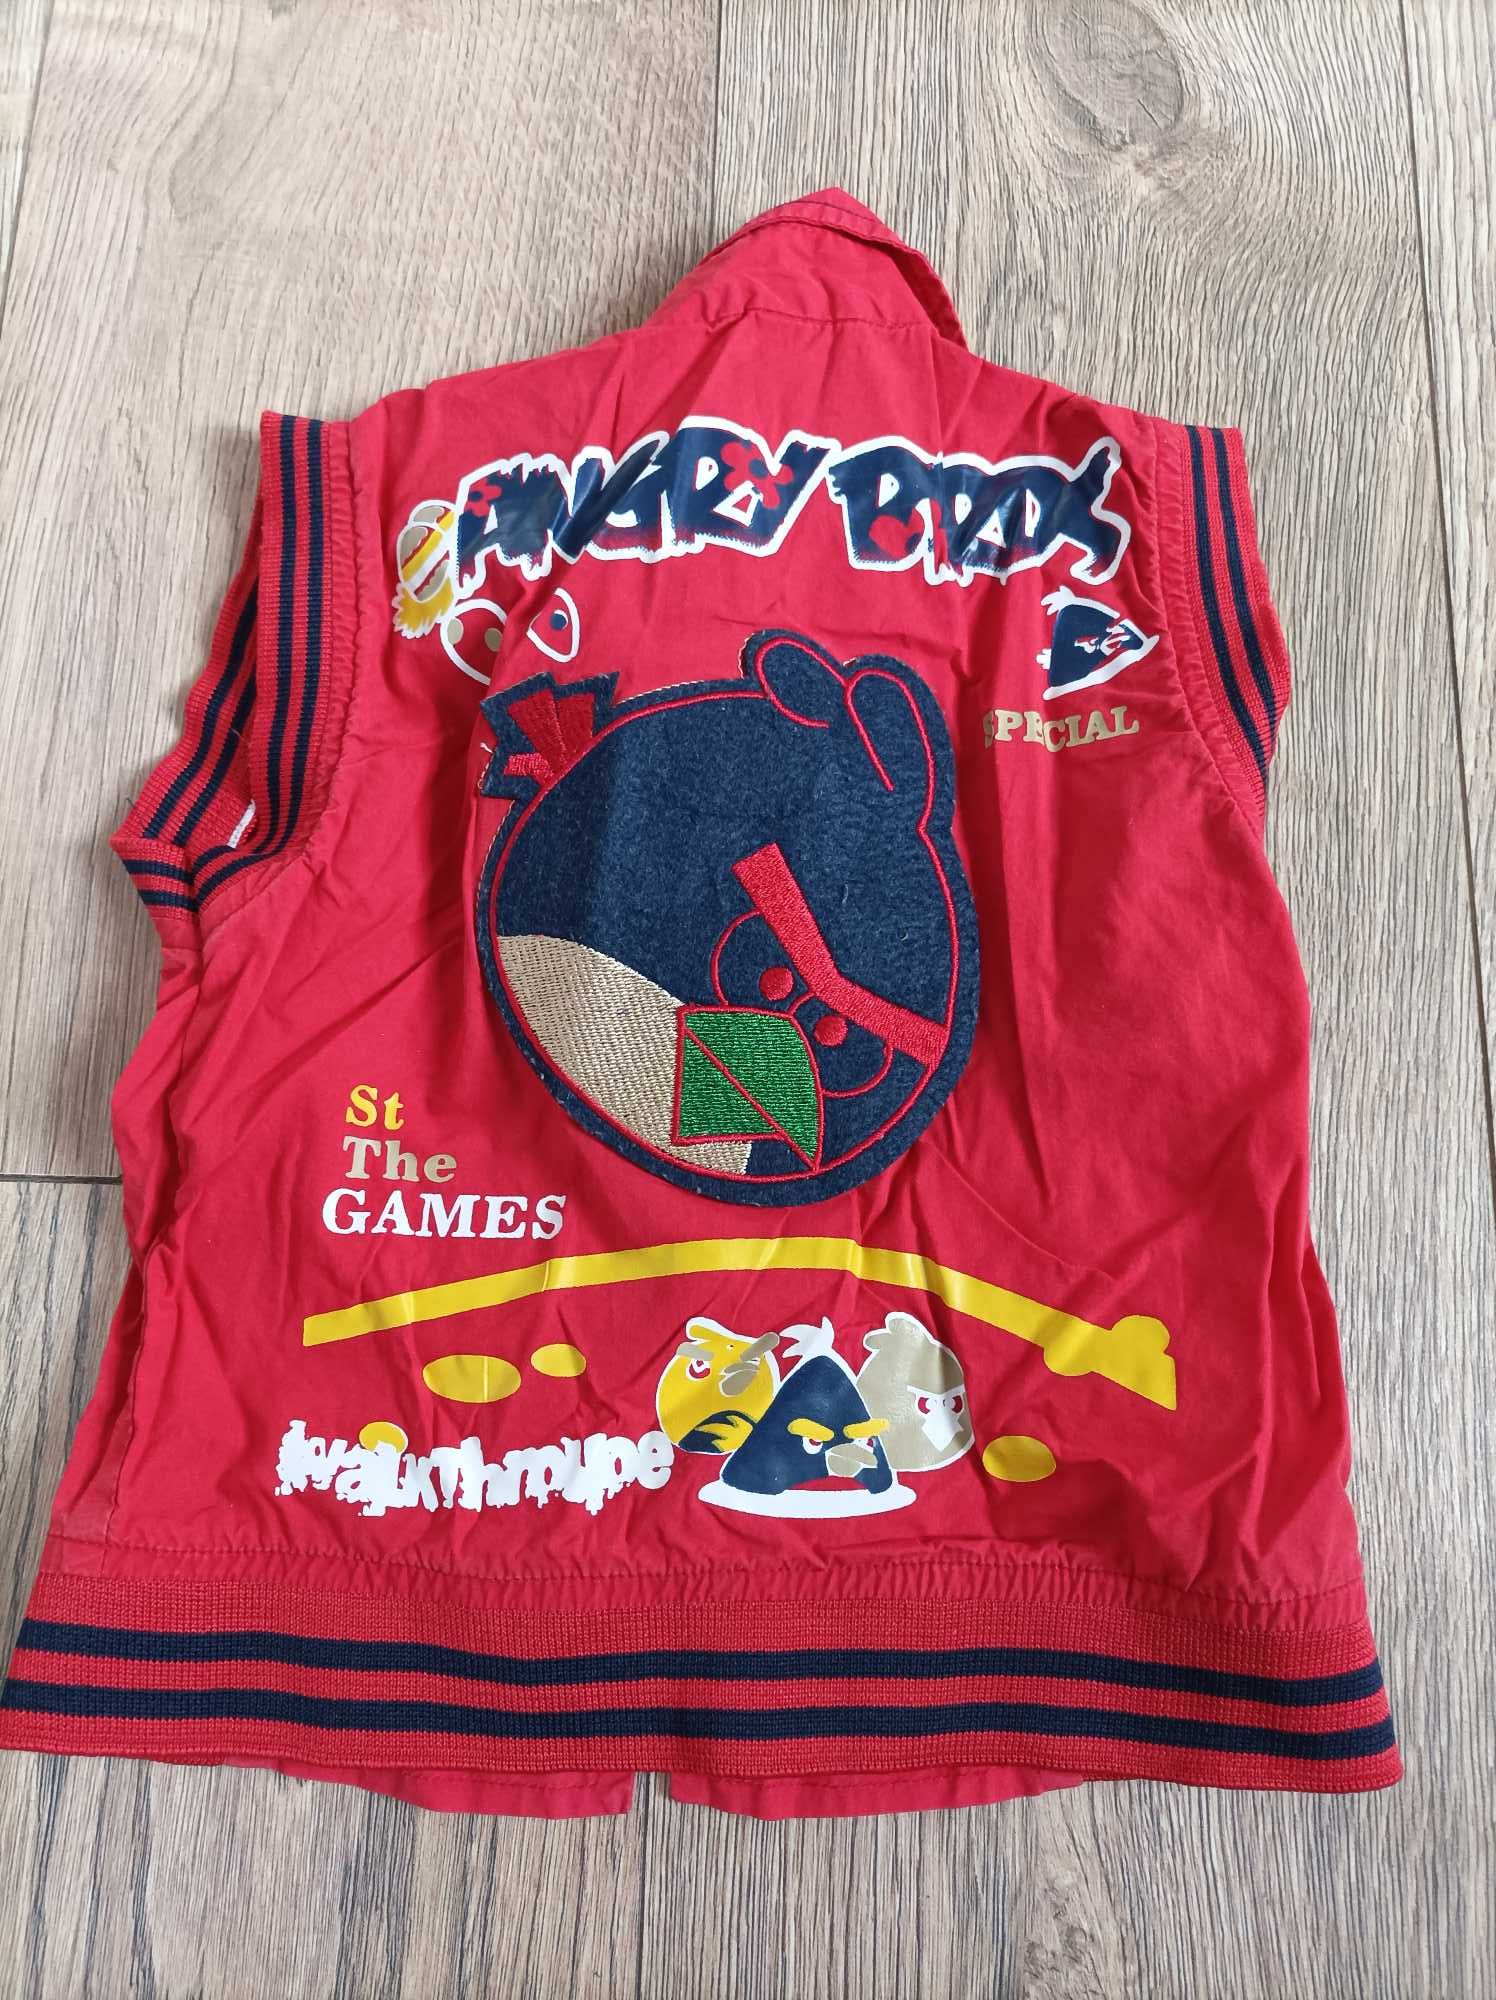 Koszula + kamizelka rozm 80/86 Lilliput, Angry Birds